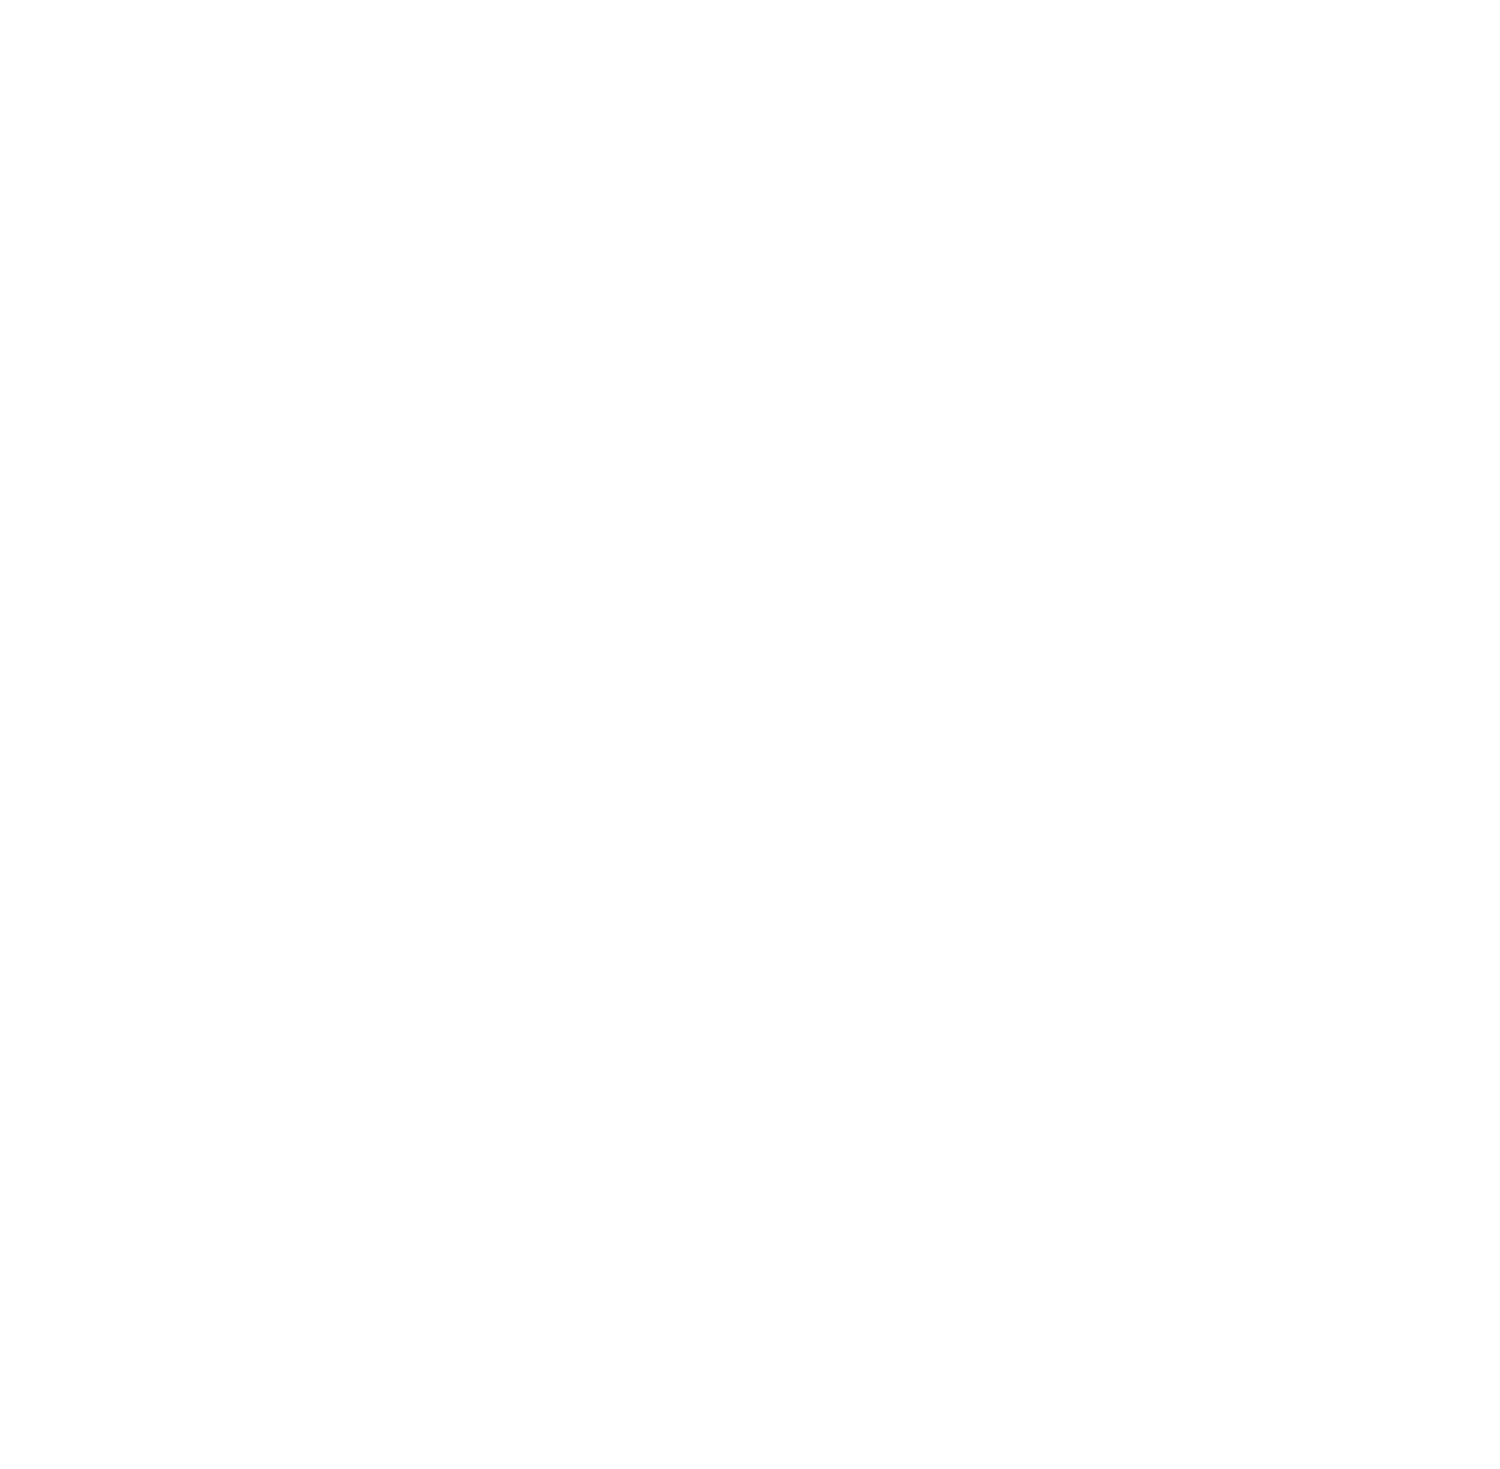 CONTROLLER